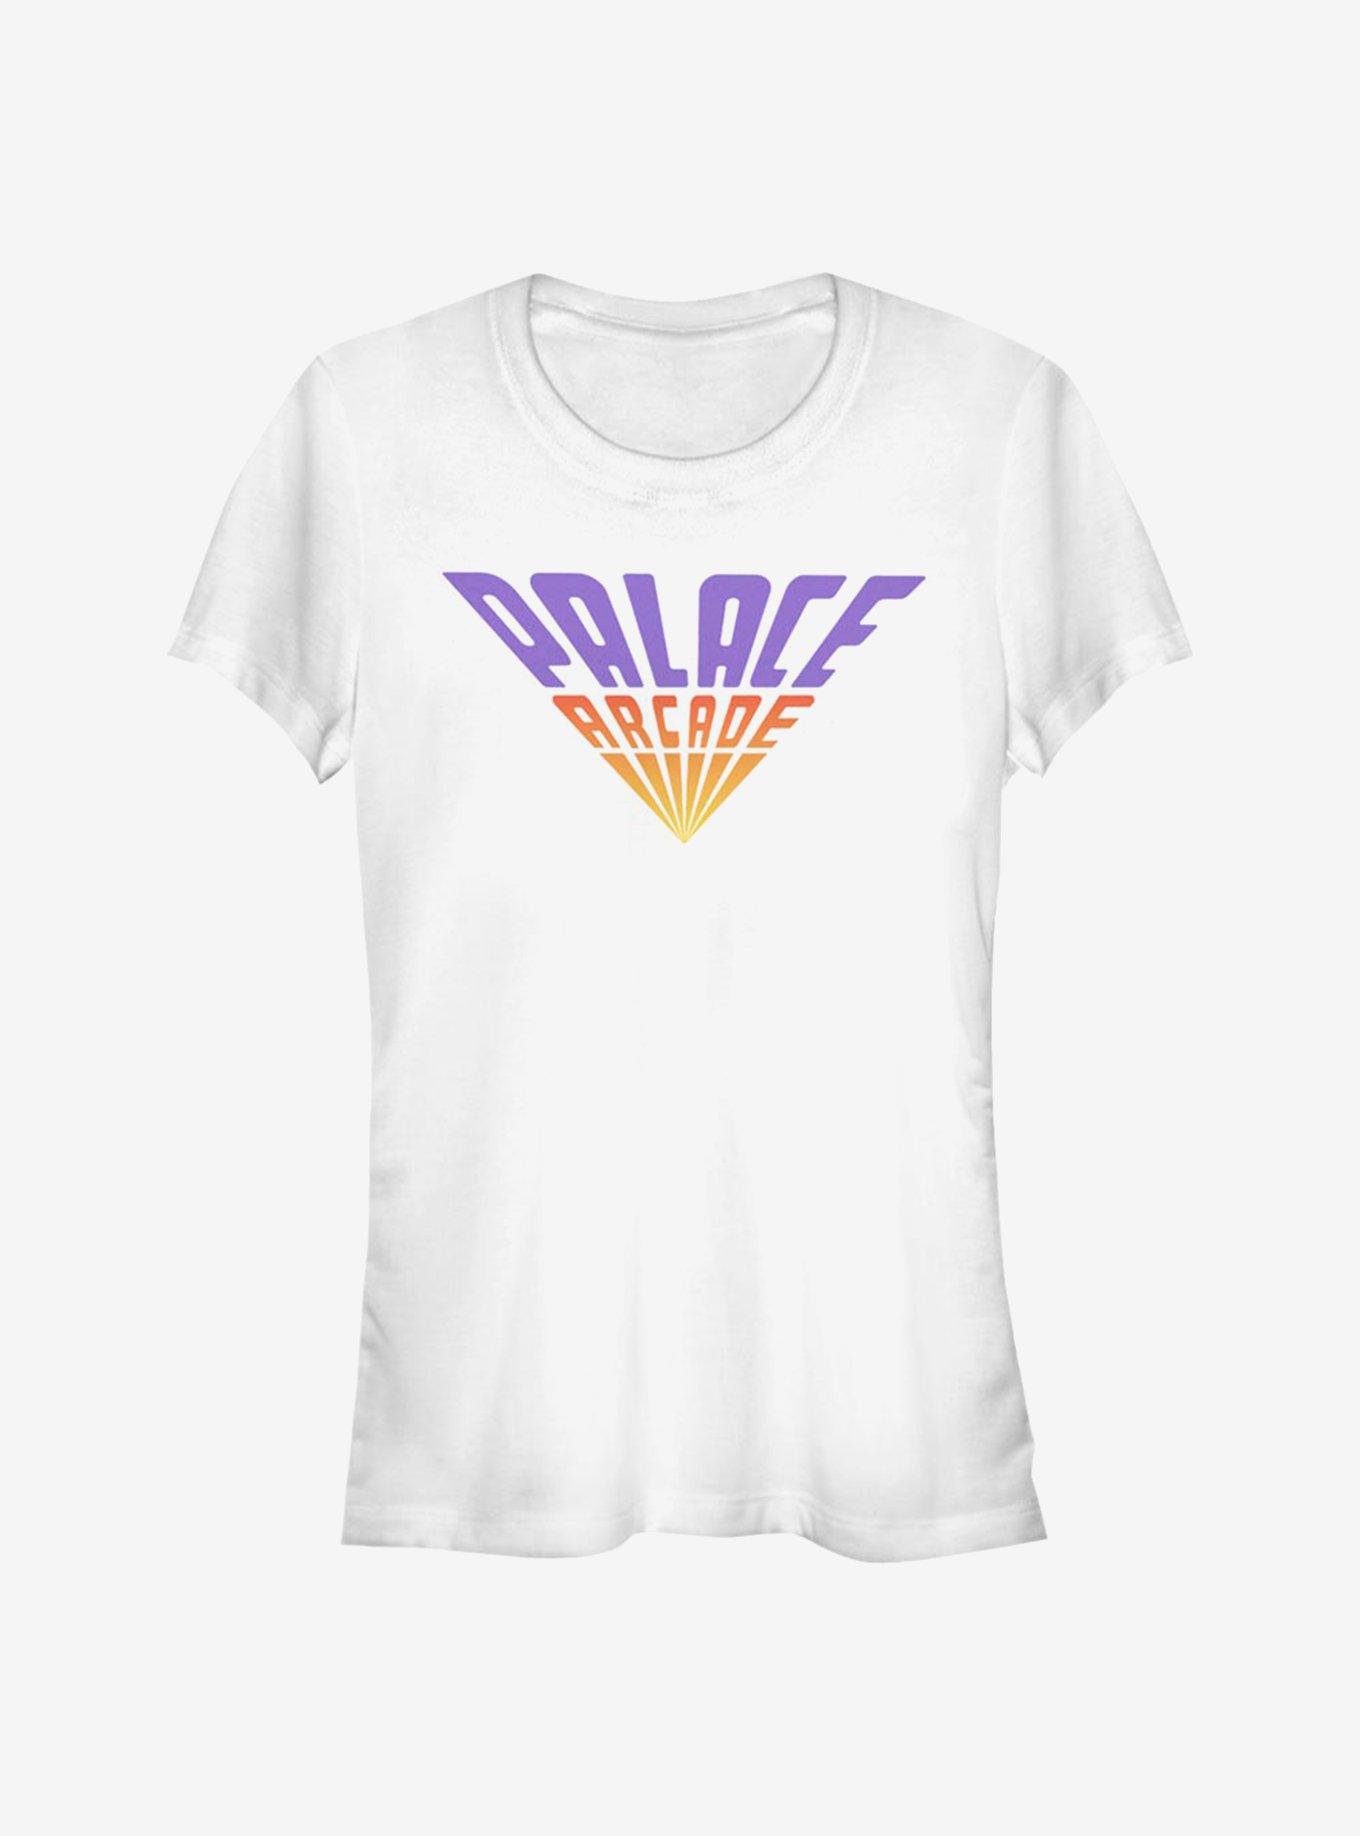 Stranger Things Palace Arcade Girls T-Shirt, WHITE, hi-res